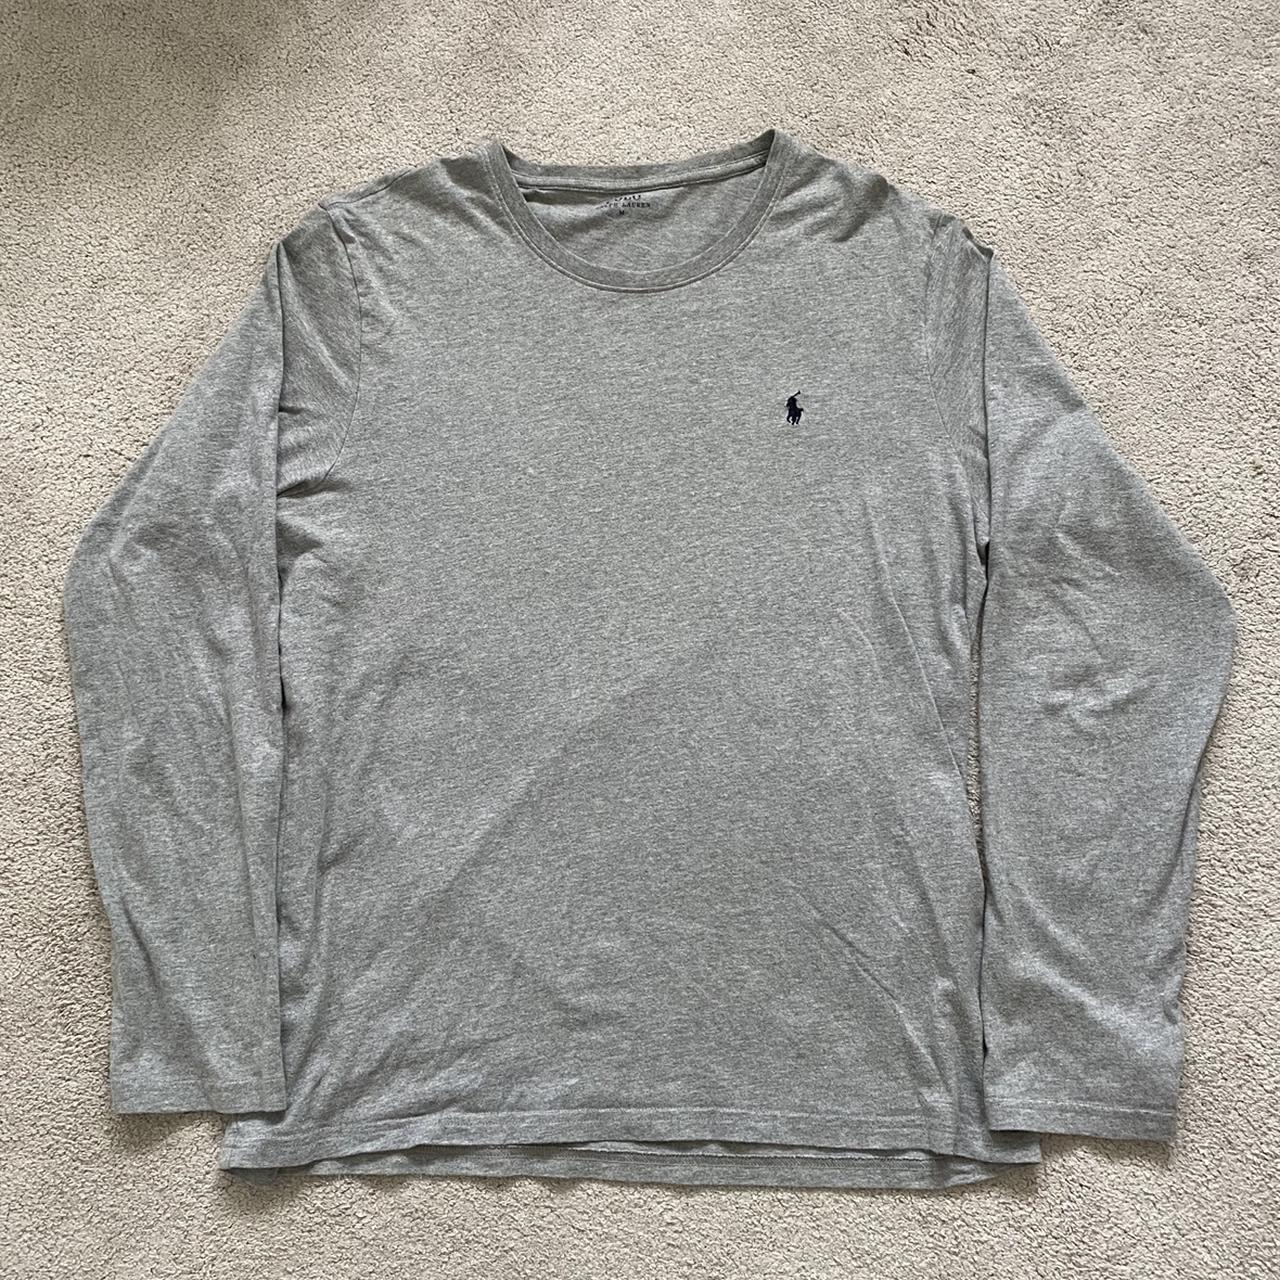 Ralph Lauren Men's Grey and Black T-shirt | Depop